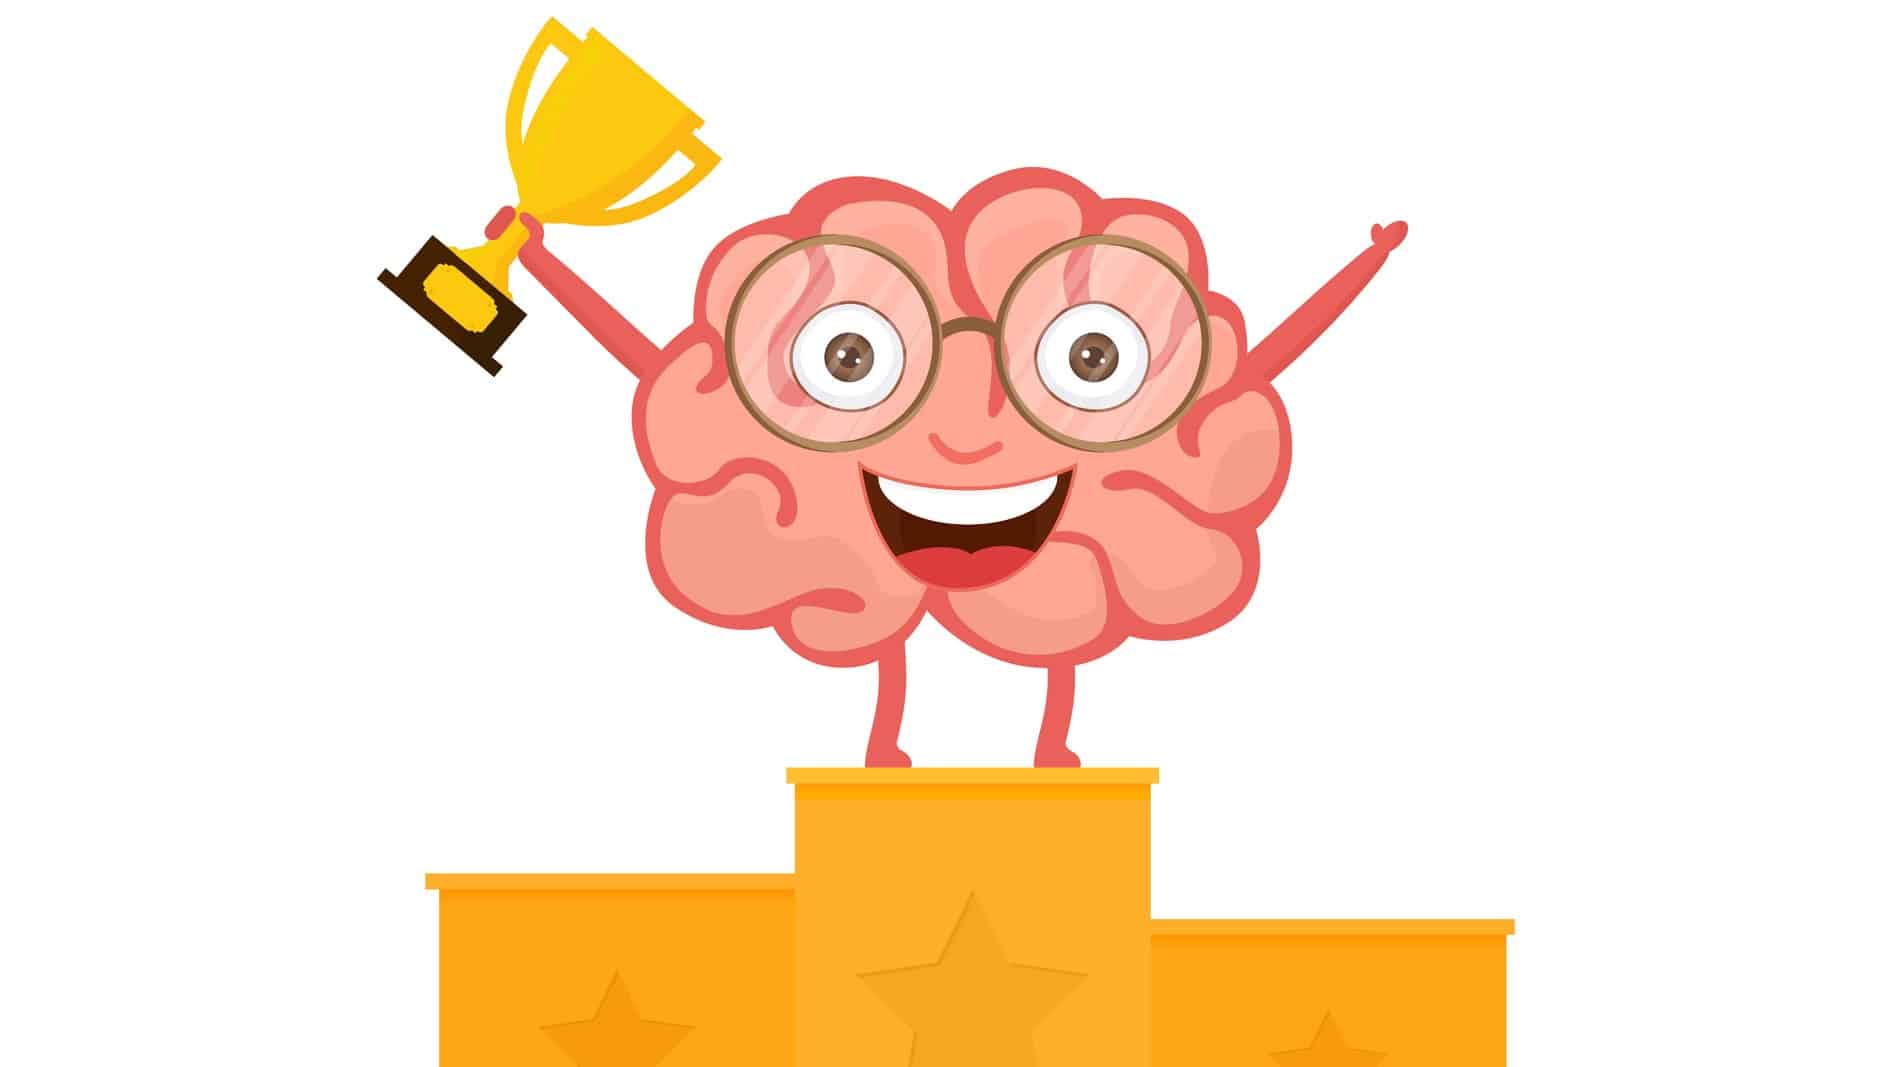 cartoon brain standing on winner's block representing rising Brainchip share price